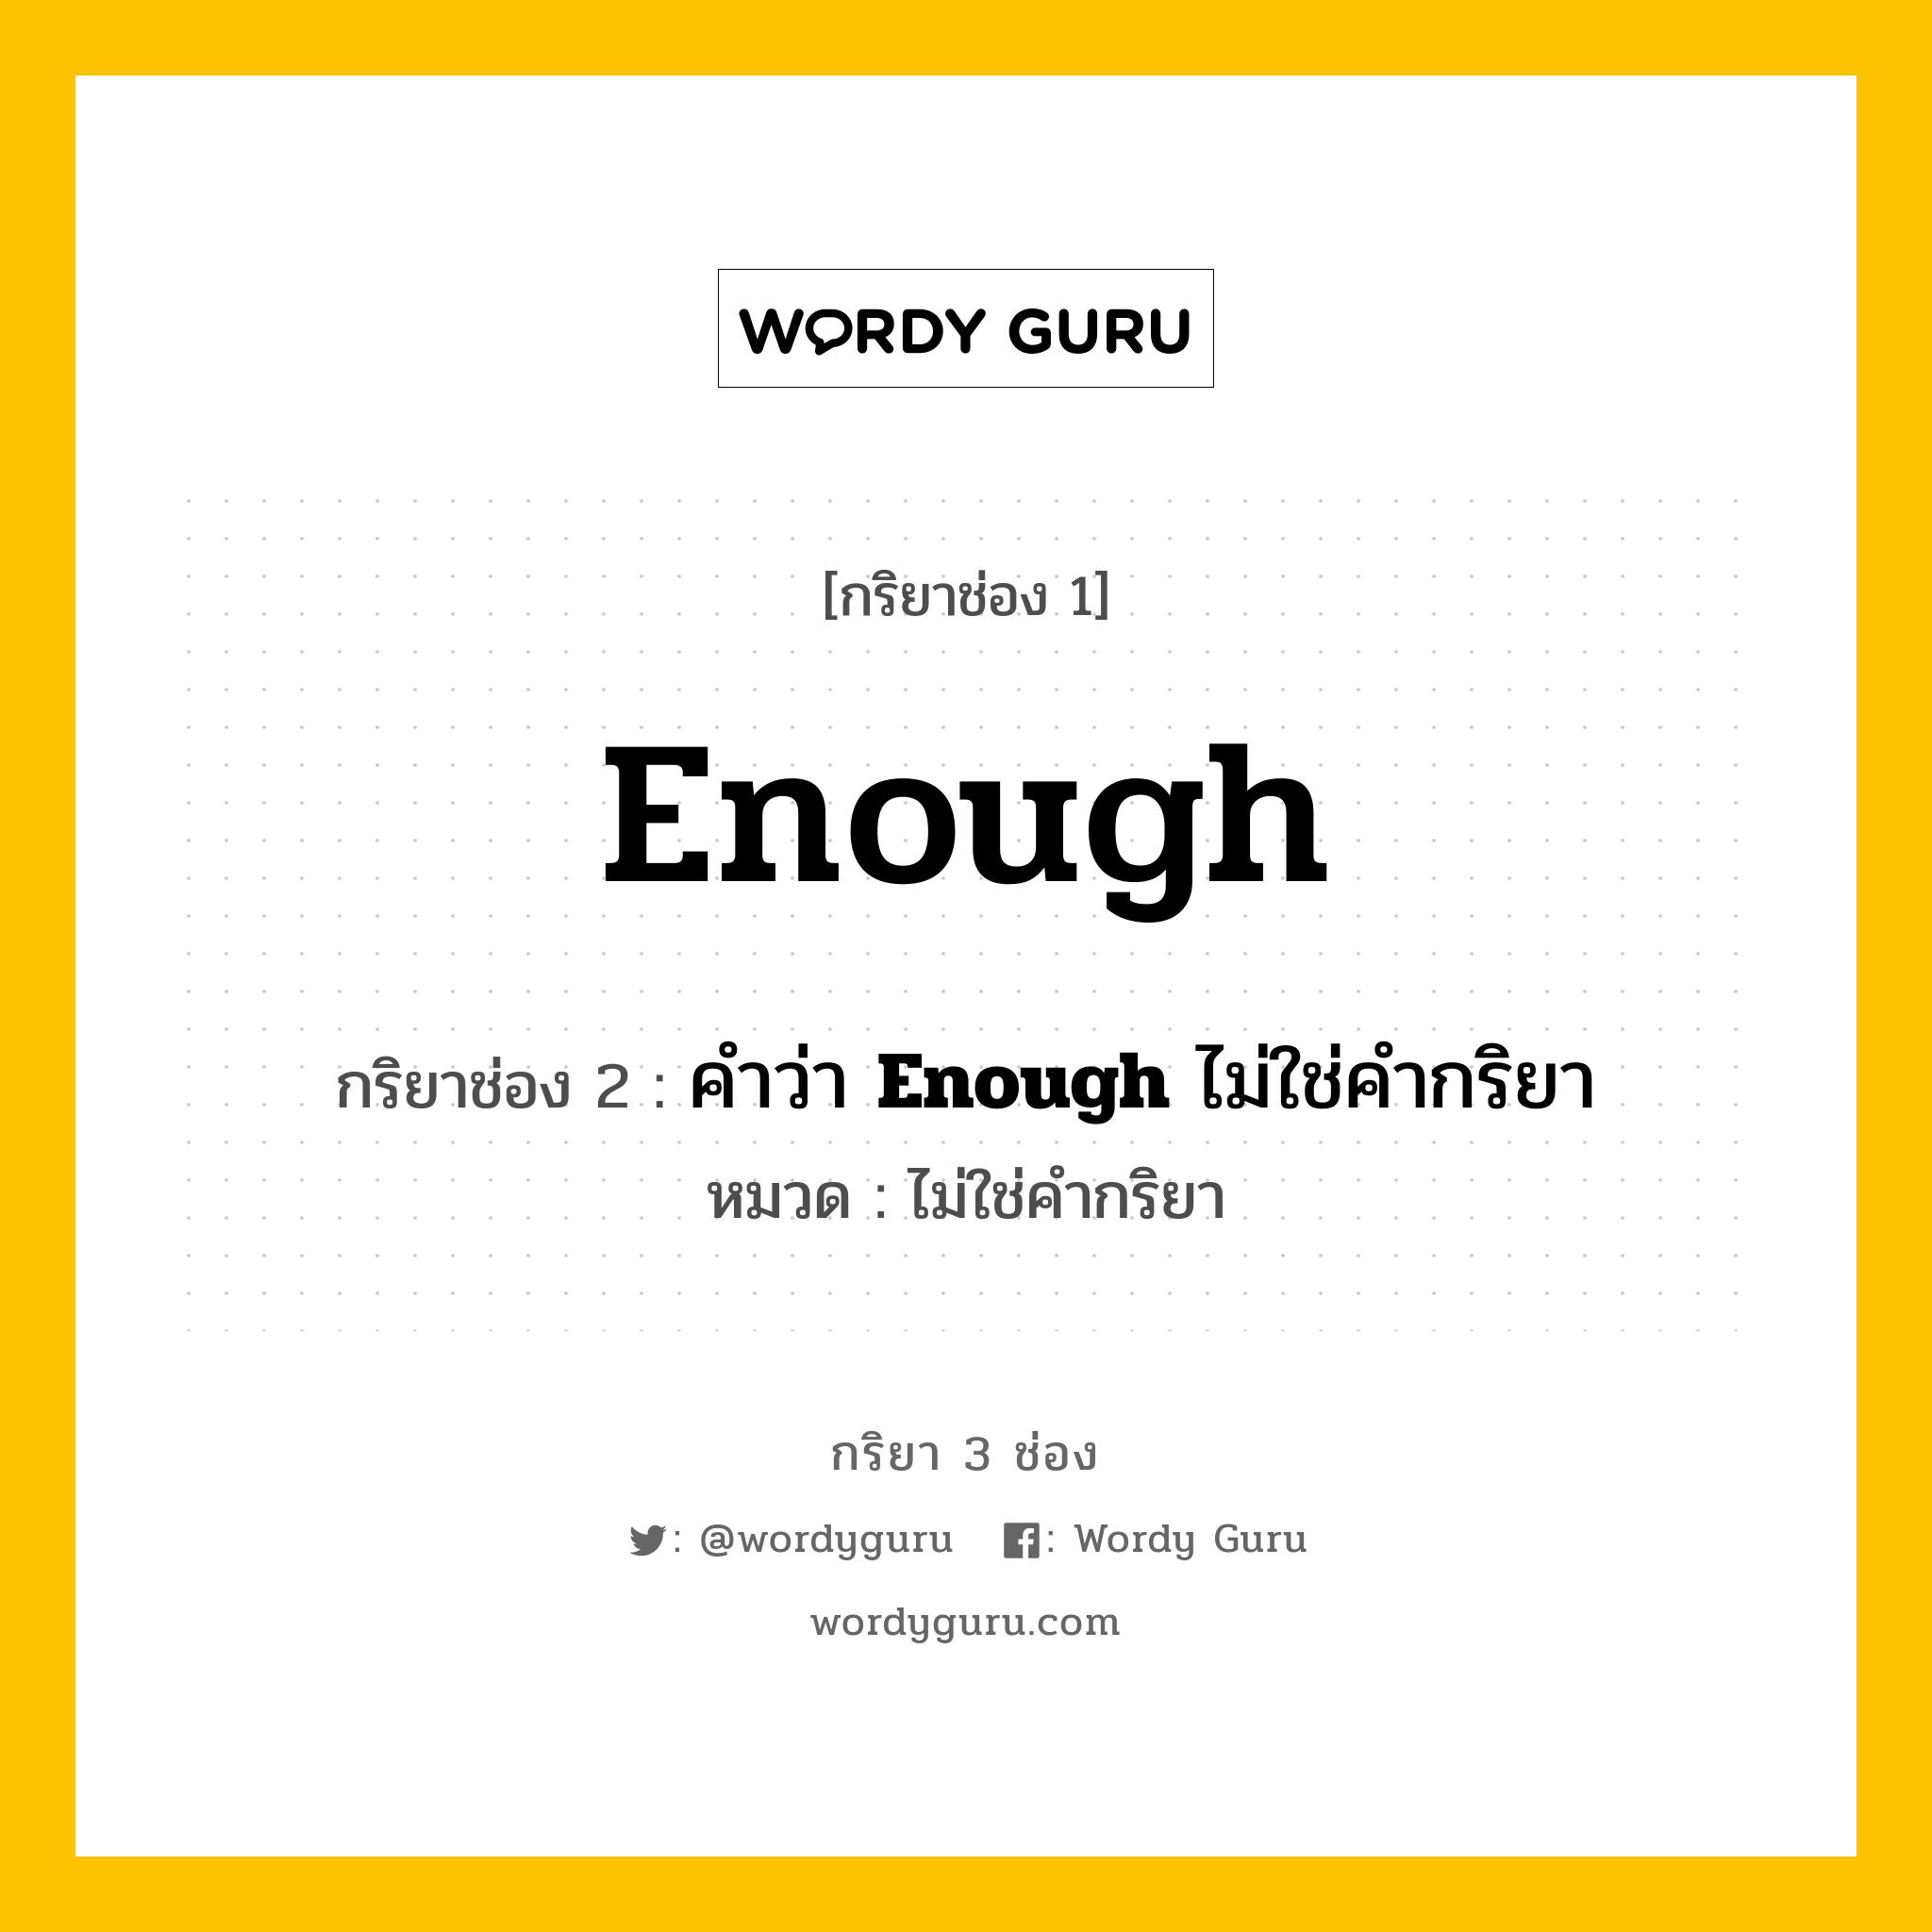 กริยา 3 ช่อง: Enough ช่อง 2 Enough ช่อง 3 คืออะไร, กริยาช่อง 1 Enough กริยาช่อง 2 คำว่า <b>Enough</b> ไม่ใช่คำกริยา หมวด ไม่ใช่คำกริยา หมวด ไม่ใช่คำกริยา